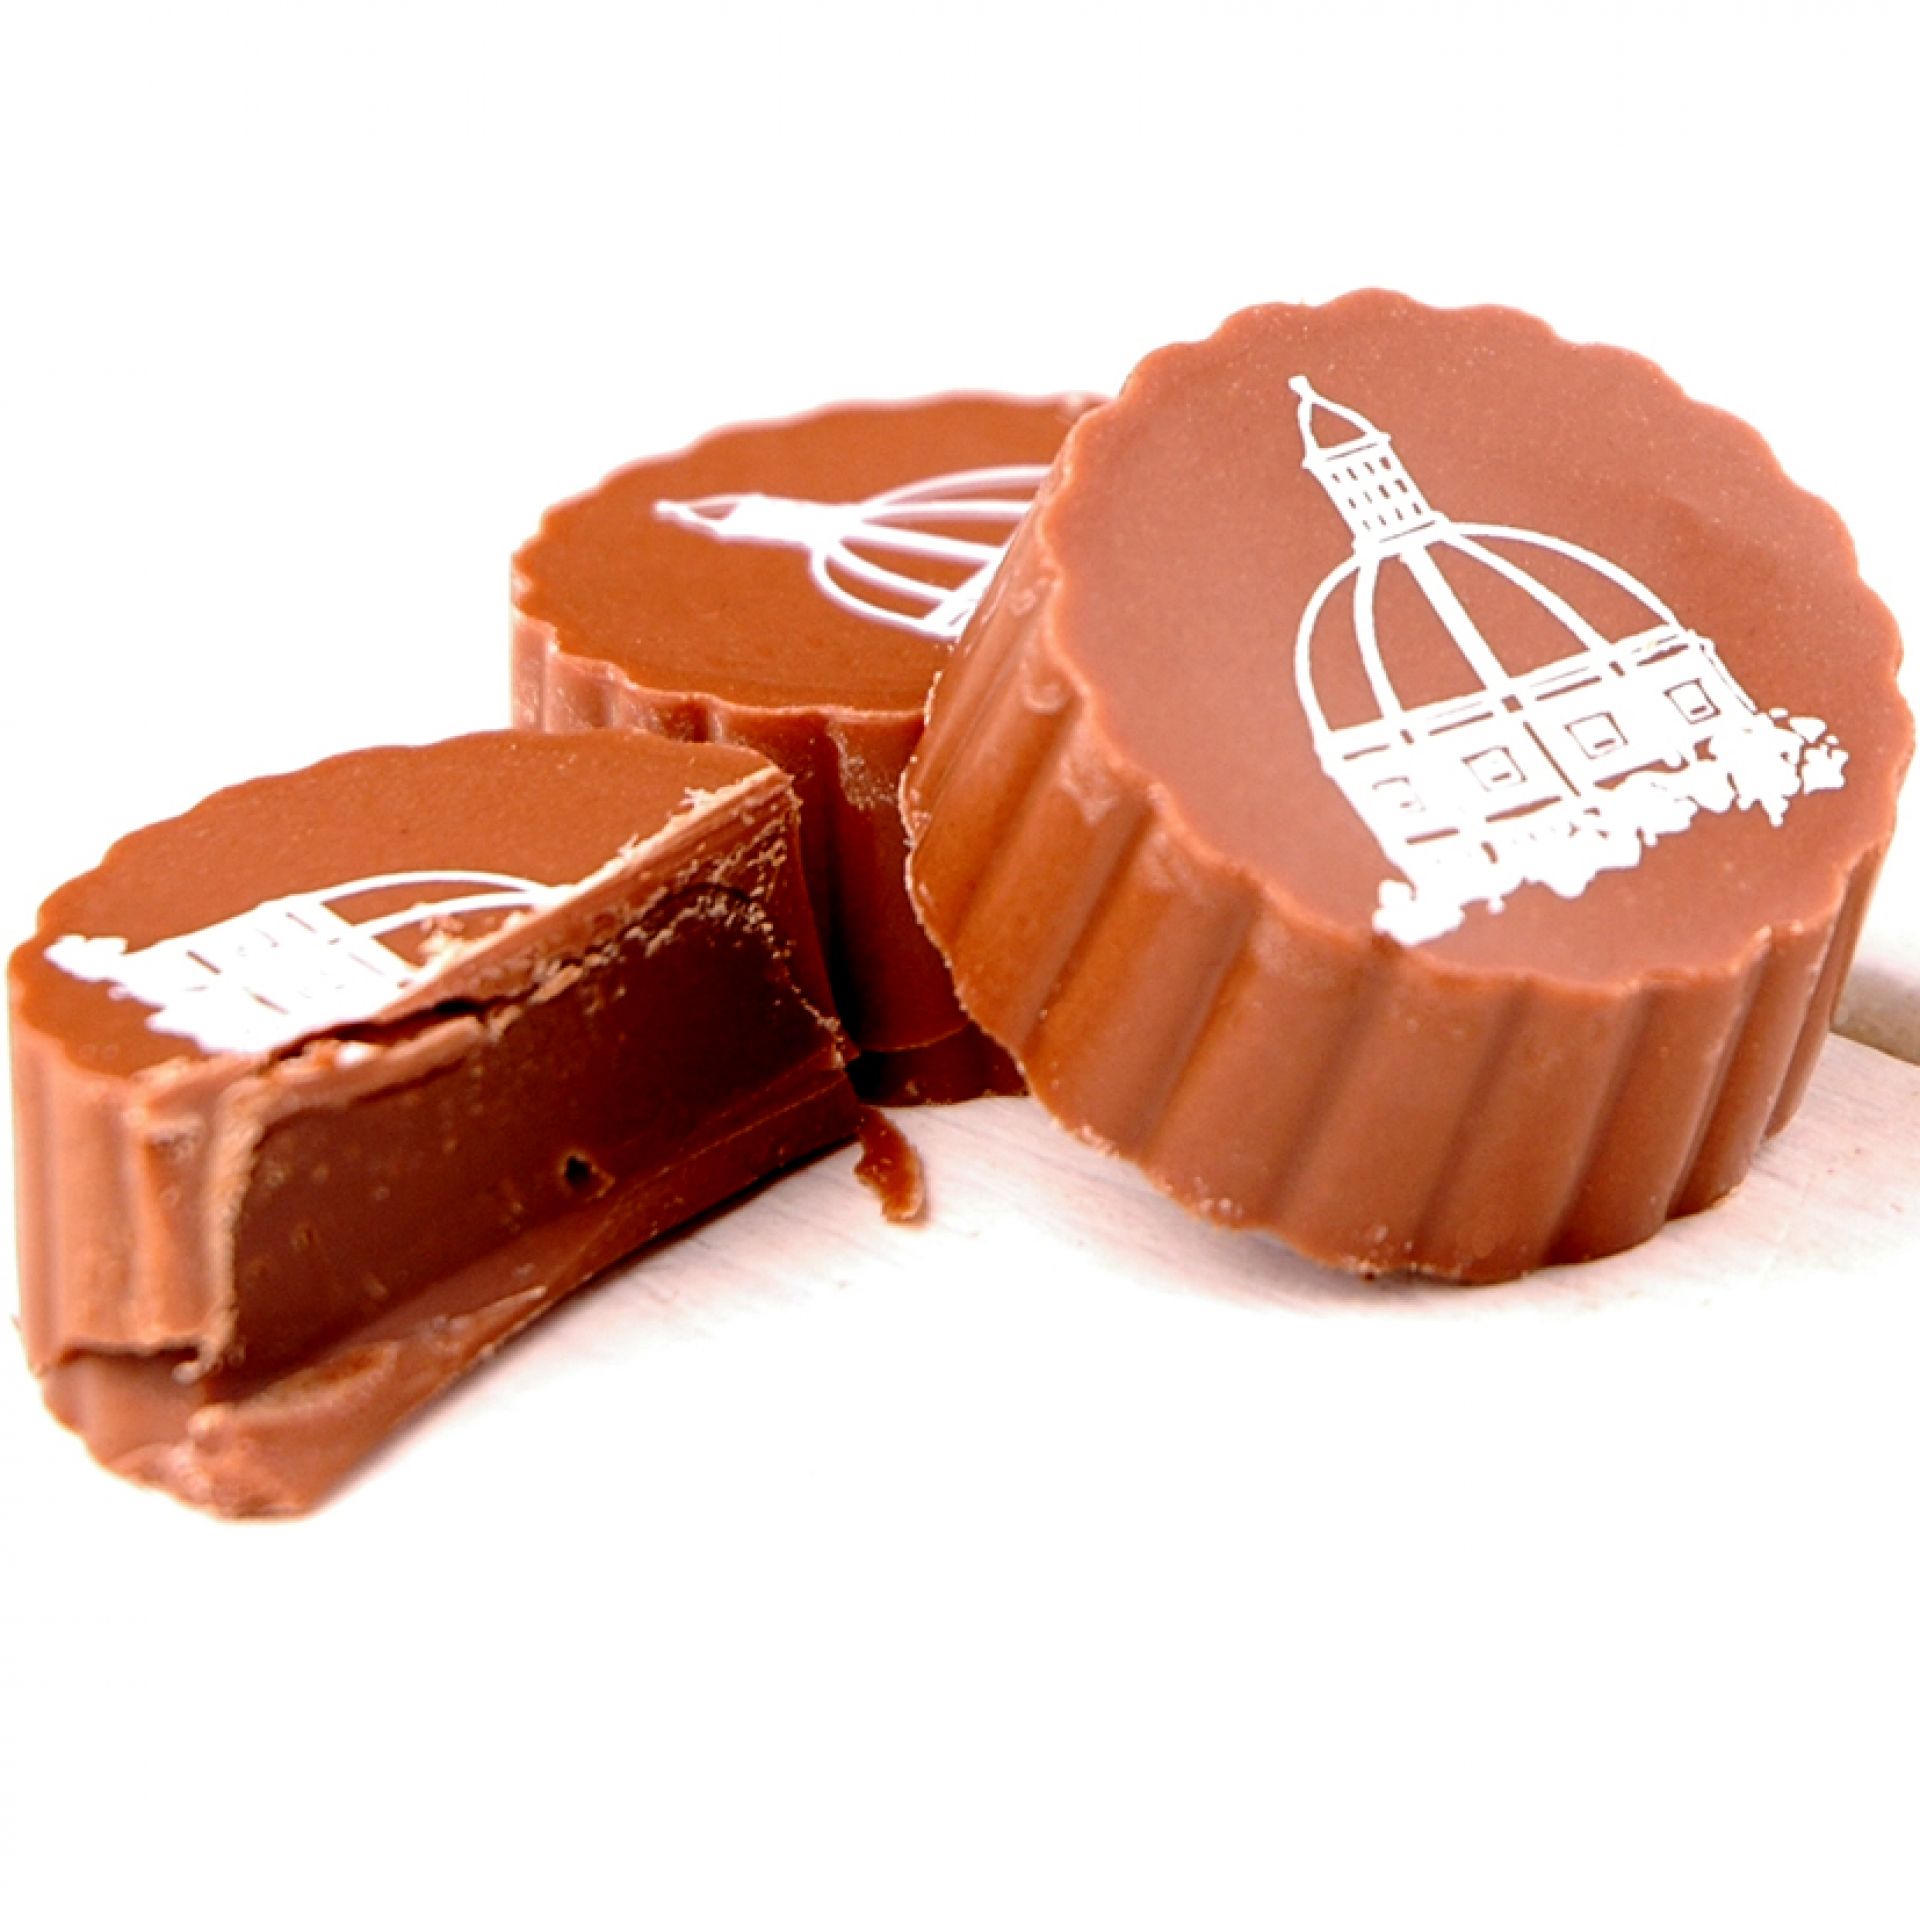 Deluxe Belgiske Chokolader